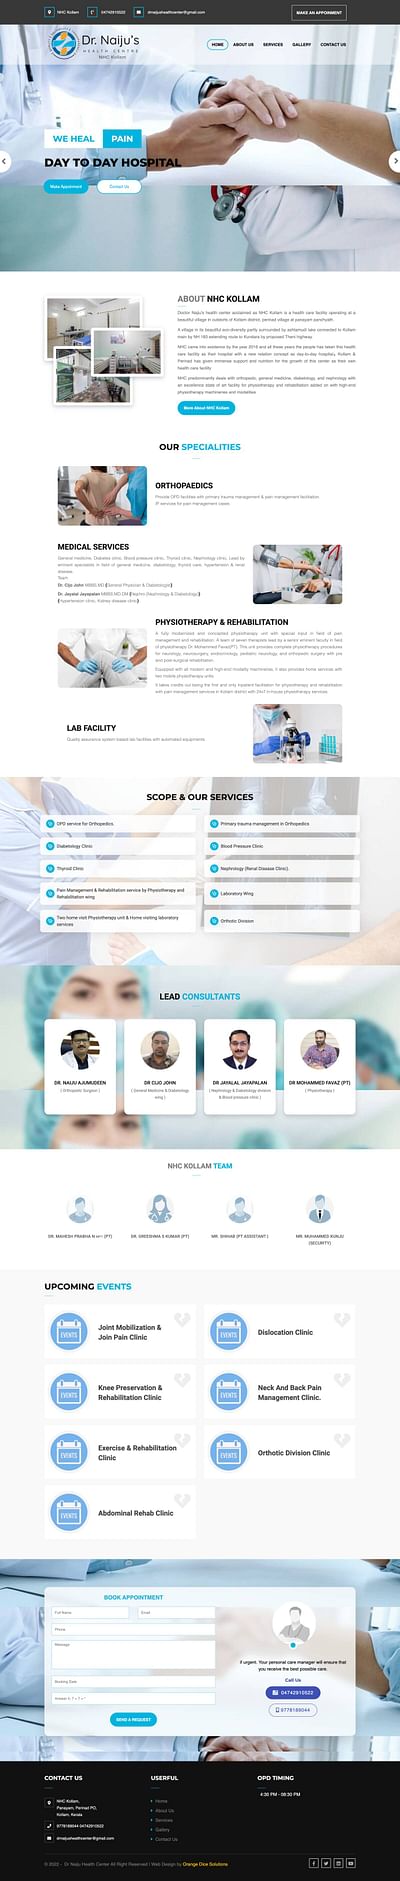 Website developed for NHC hospital Kollam - Online Advertising